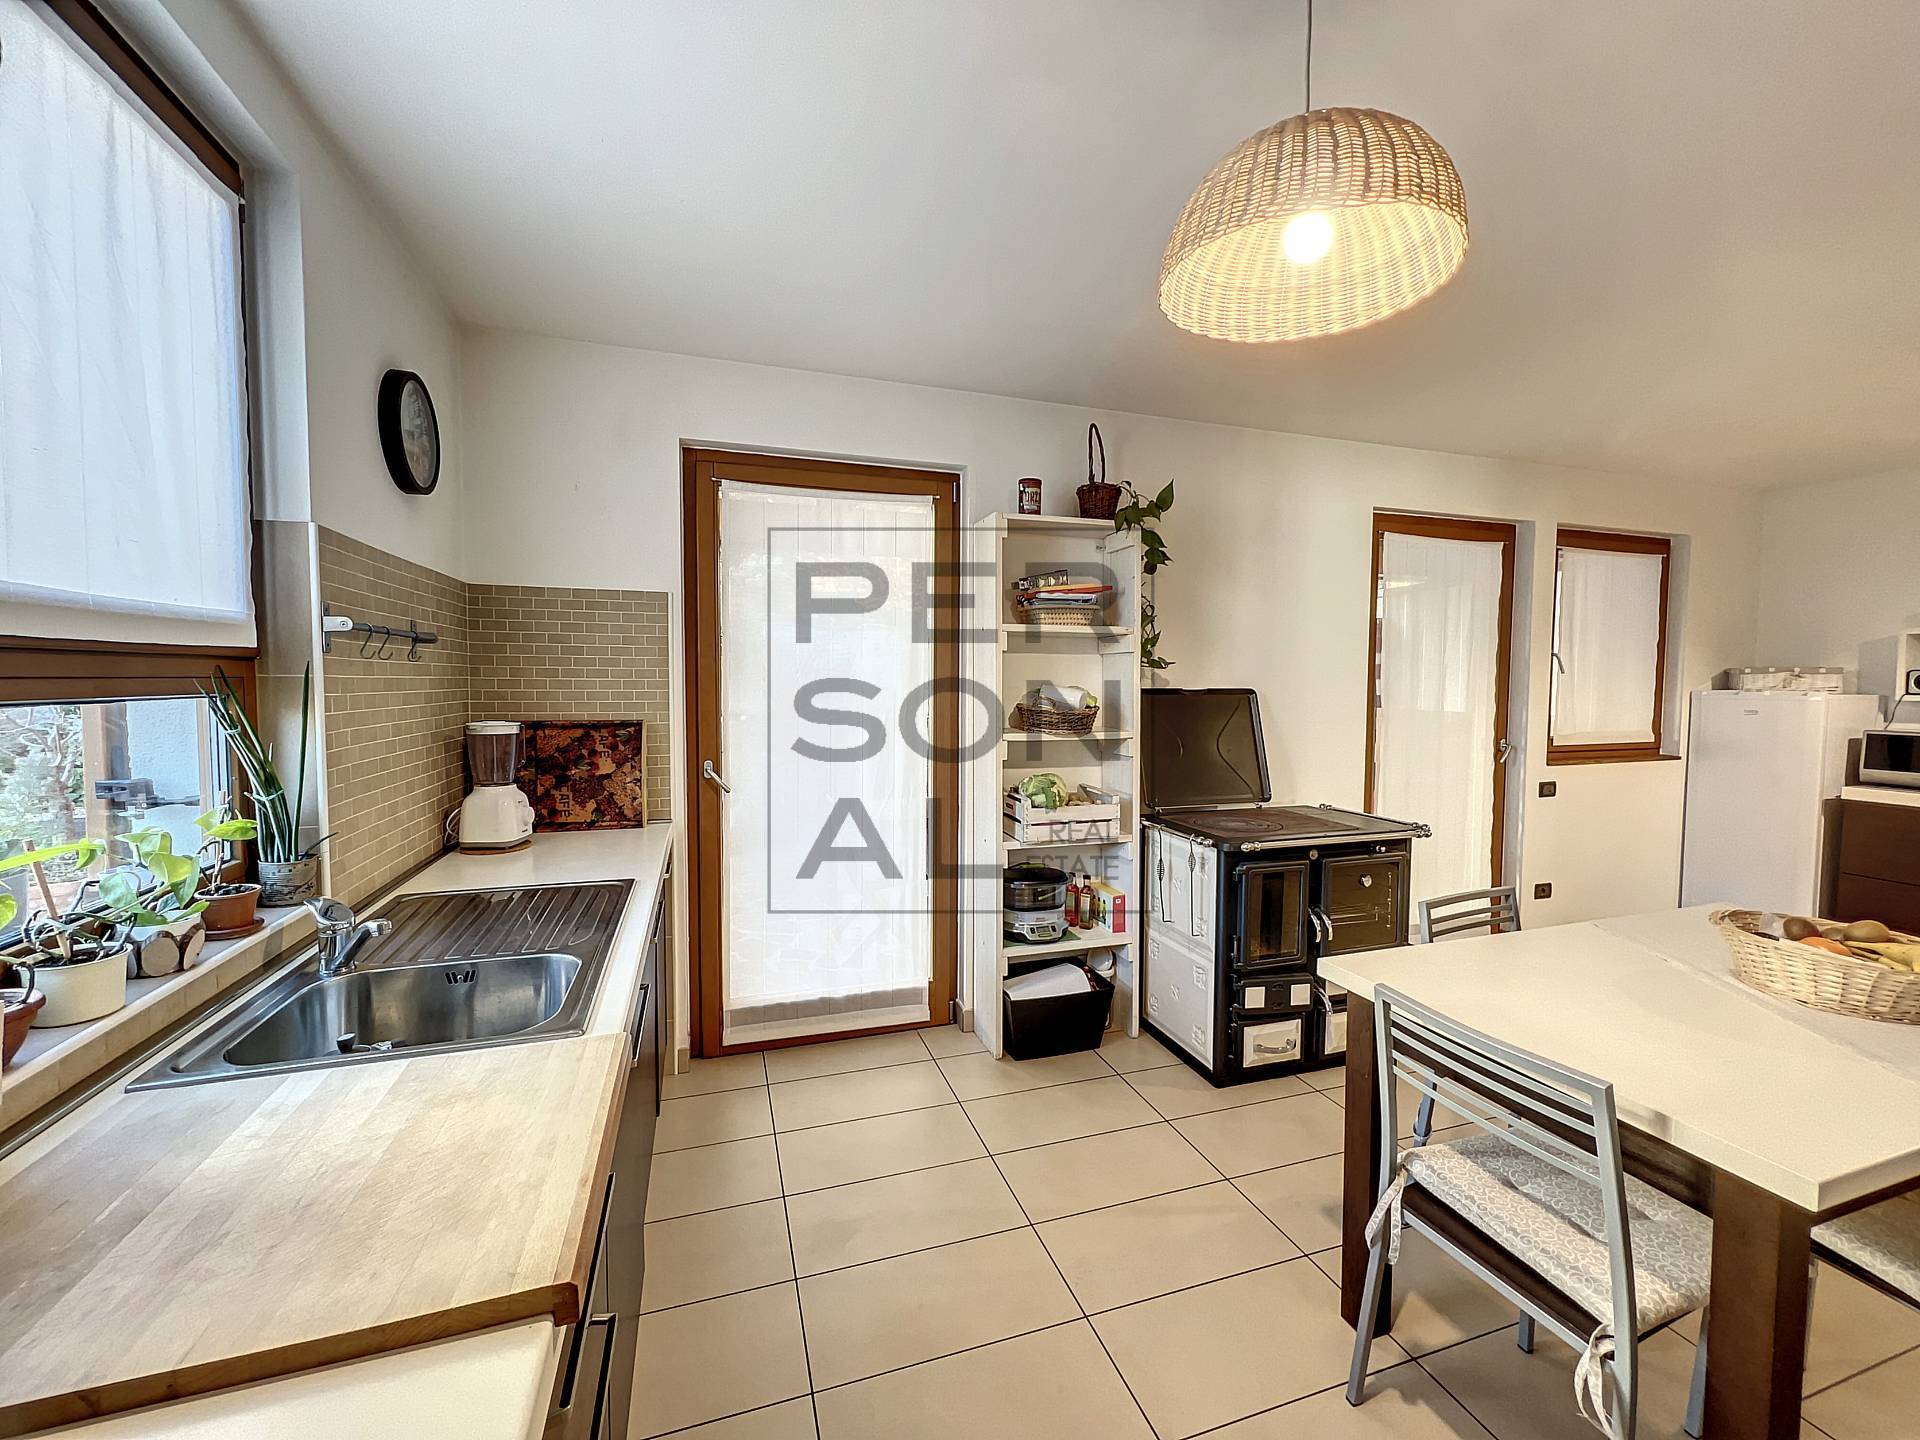 Foto casa indipendente in vendita a Fornace (Trento)